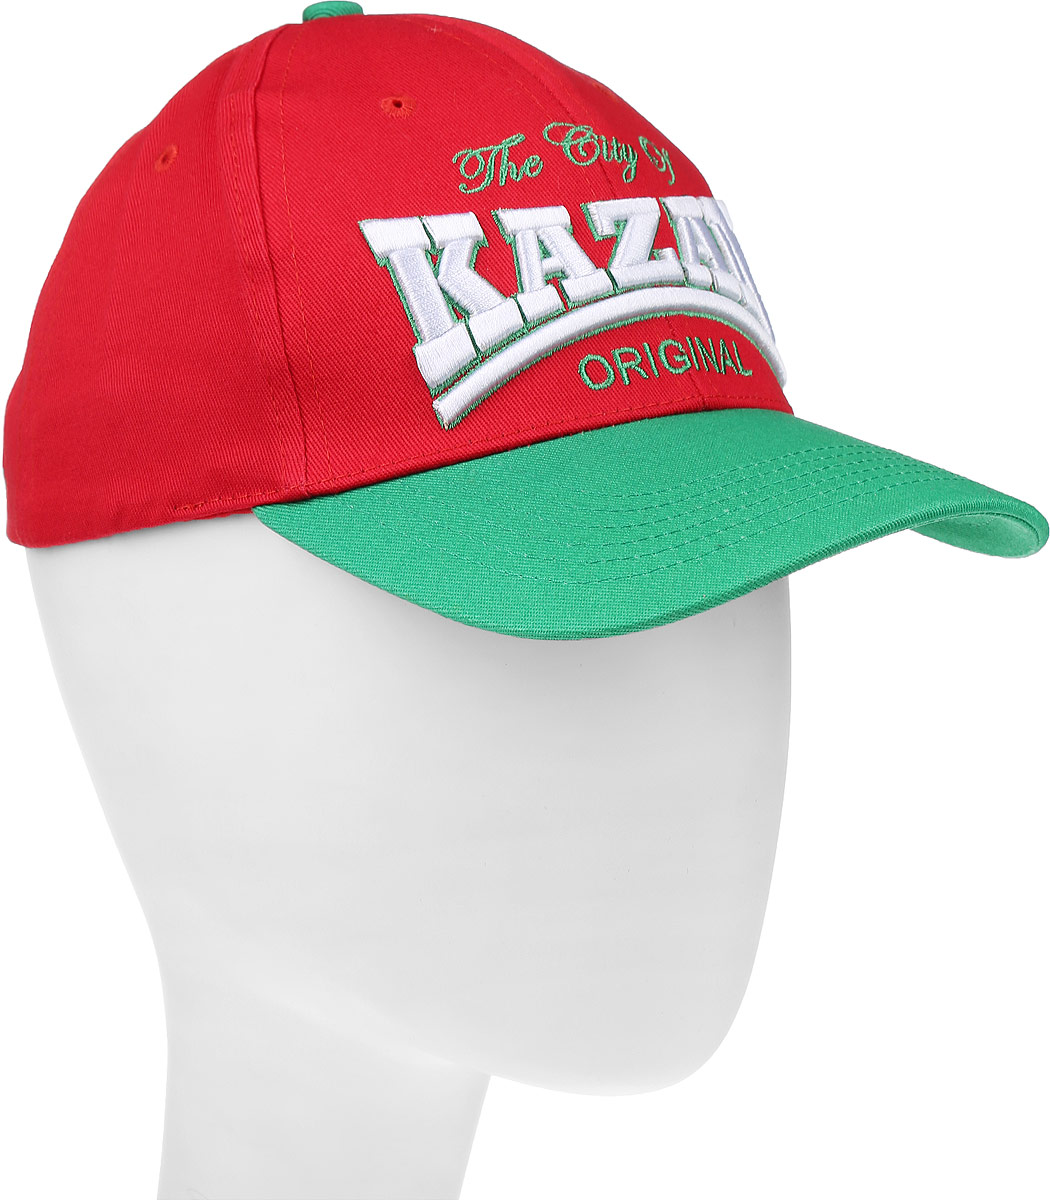 Бейсболка Robin Ruth Kazan, цвет: красный, зеленый. CRUS018-C. Размер универсальный